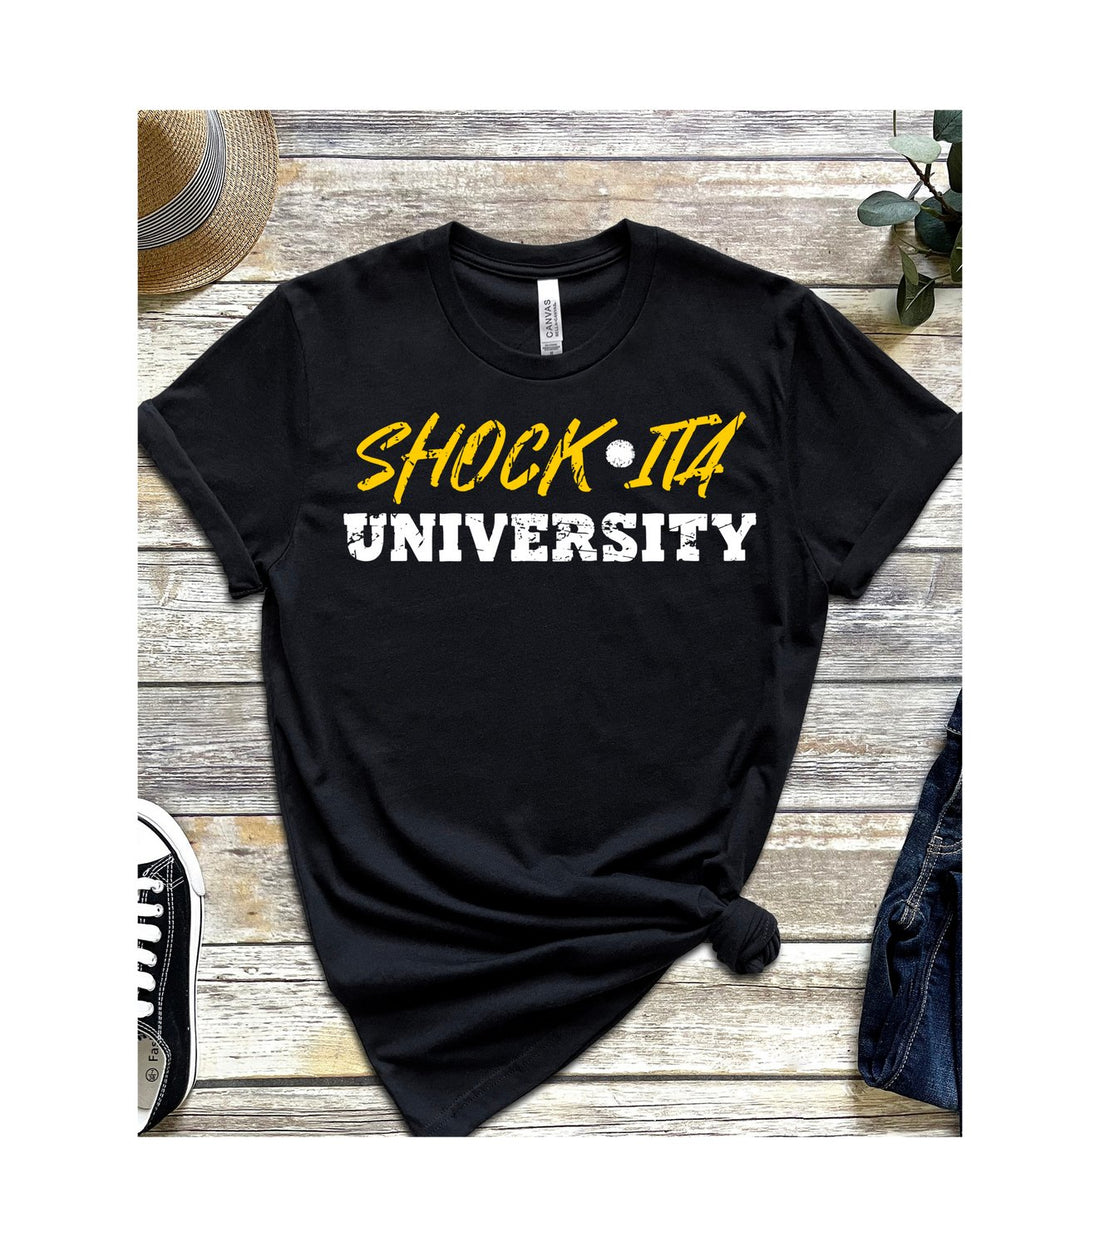 Shock-ita Univ Jersey Short-Sleeve T-Shirt - T-Shirts - Positively Sassy - Shock-ita Univ Jersey Short-Sleeve T-Shirt